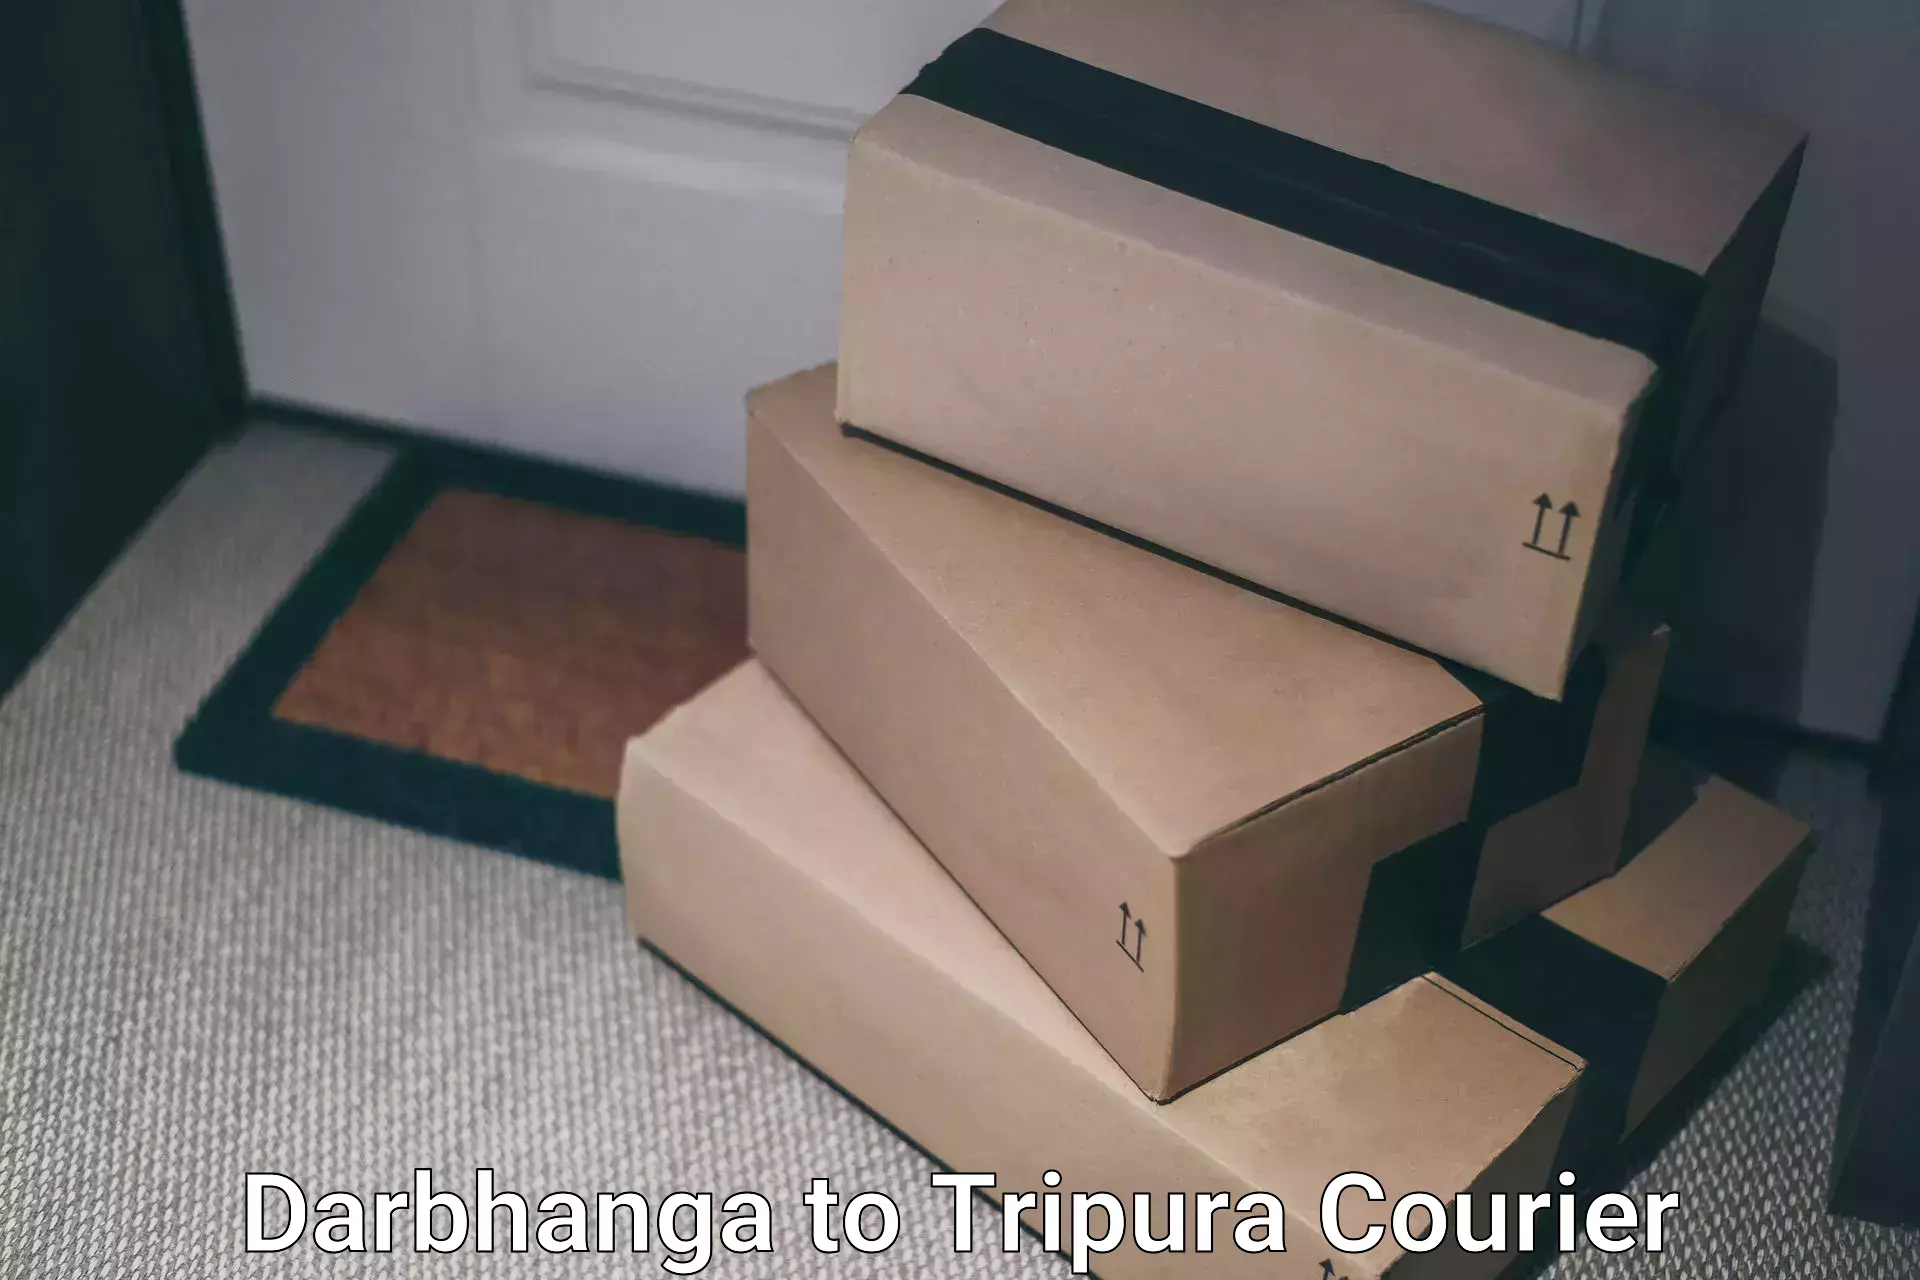 Same-day delivery options Darbhanga to Sonamura